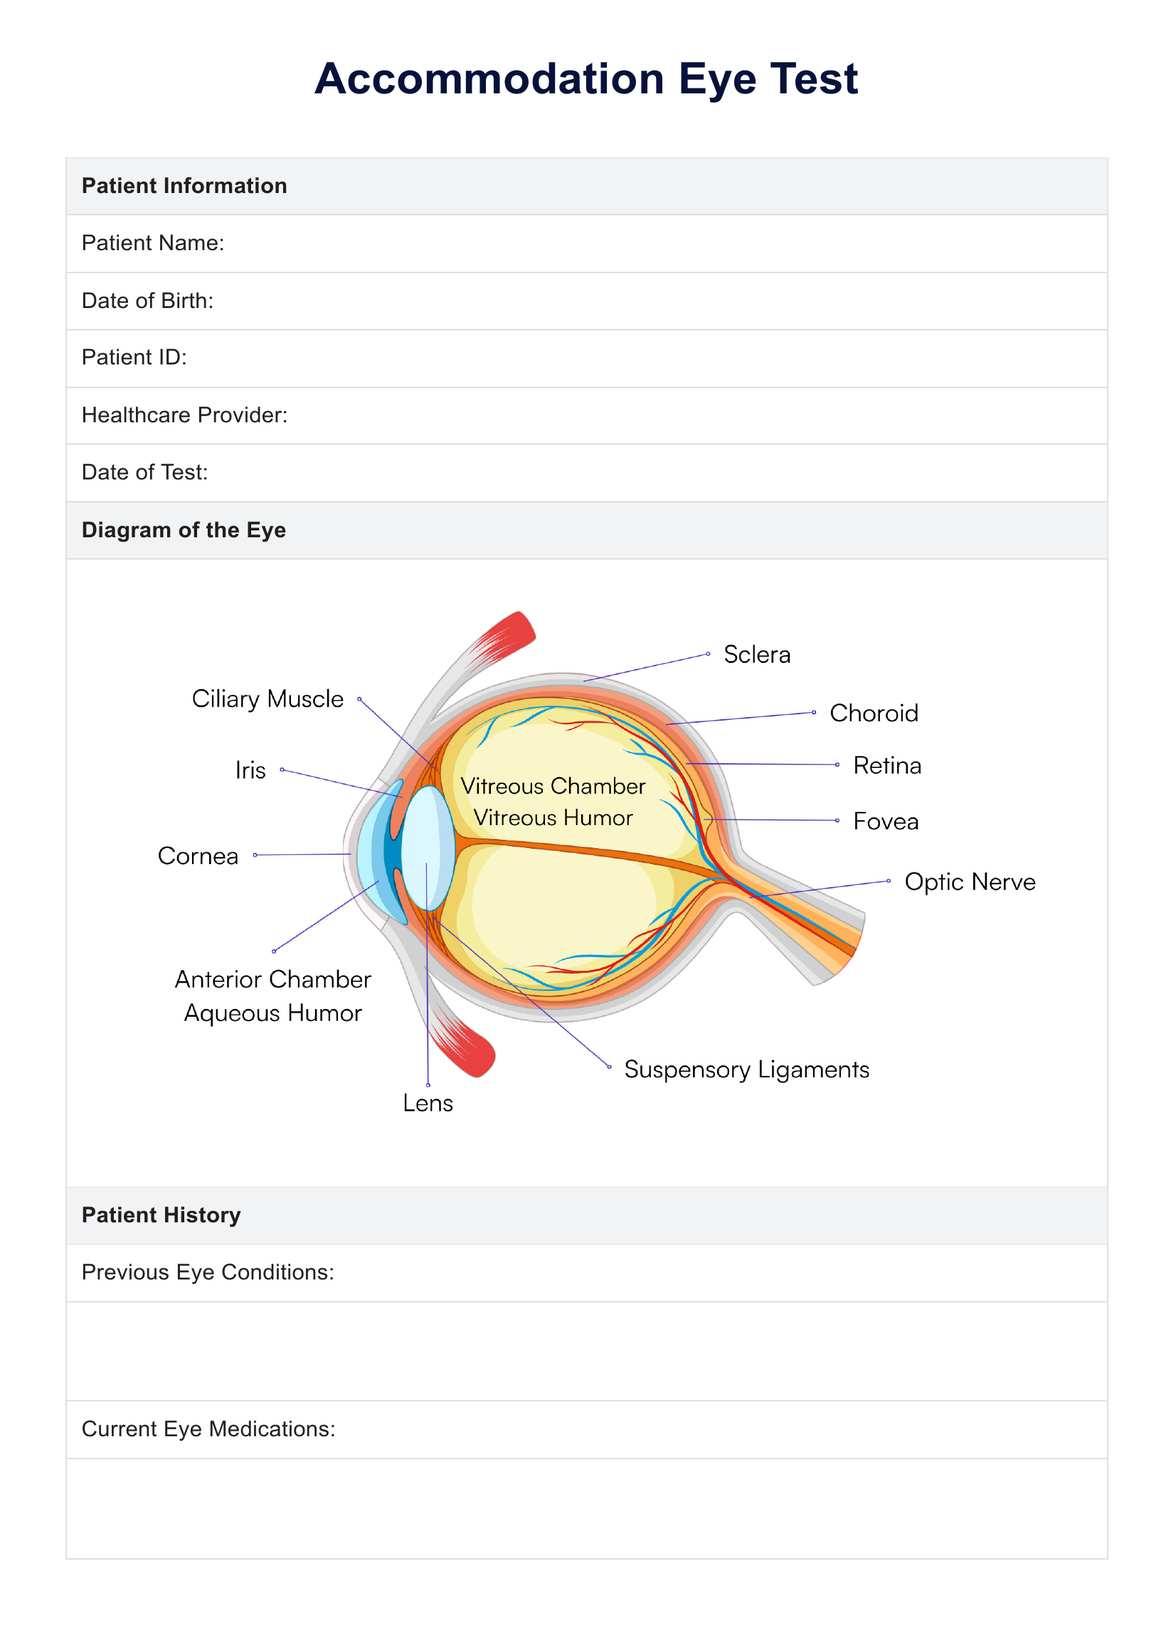 Accommodation Eye Test PDF Example